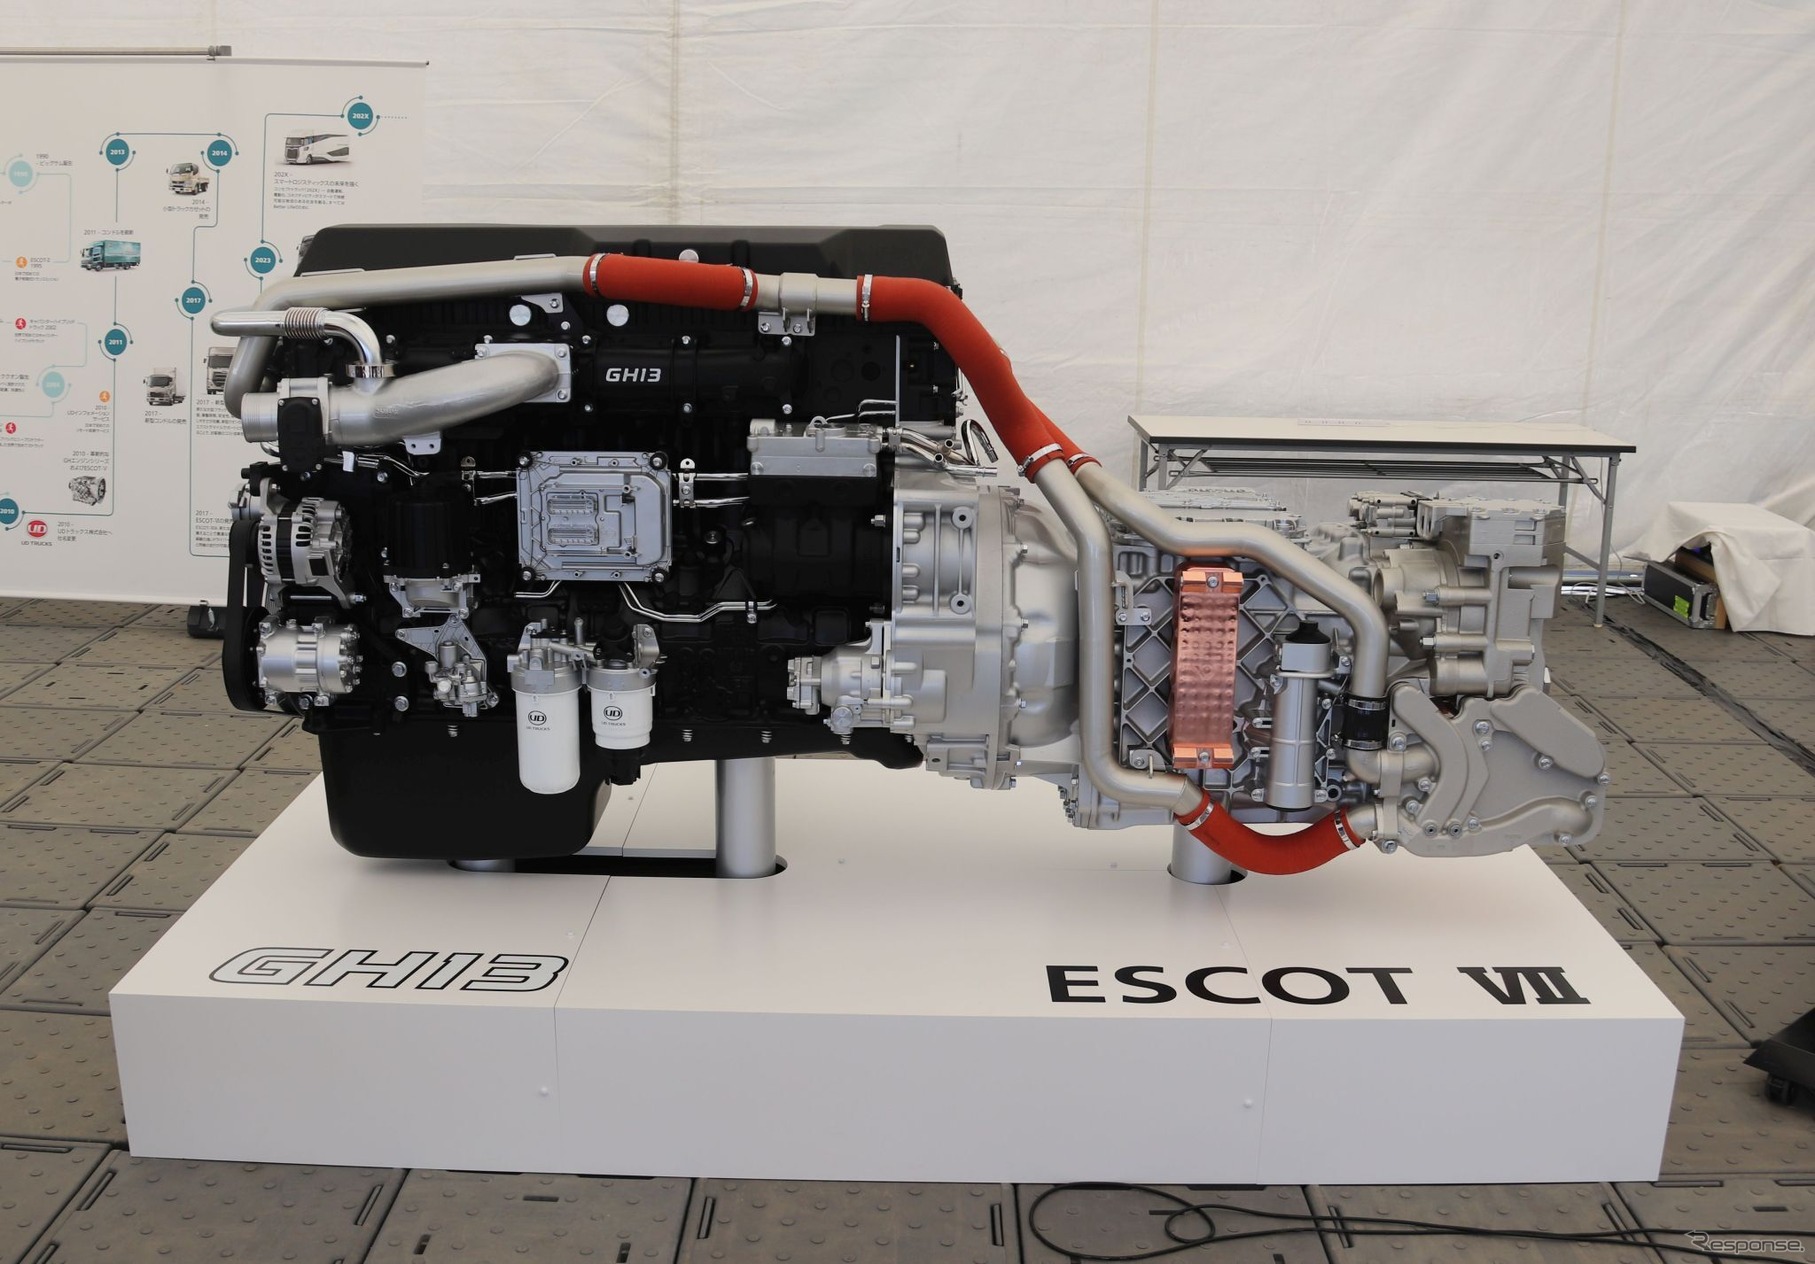 新型GH13エンジンとESCOT-VII